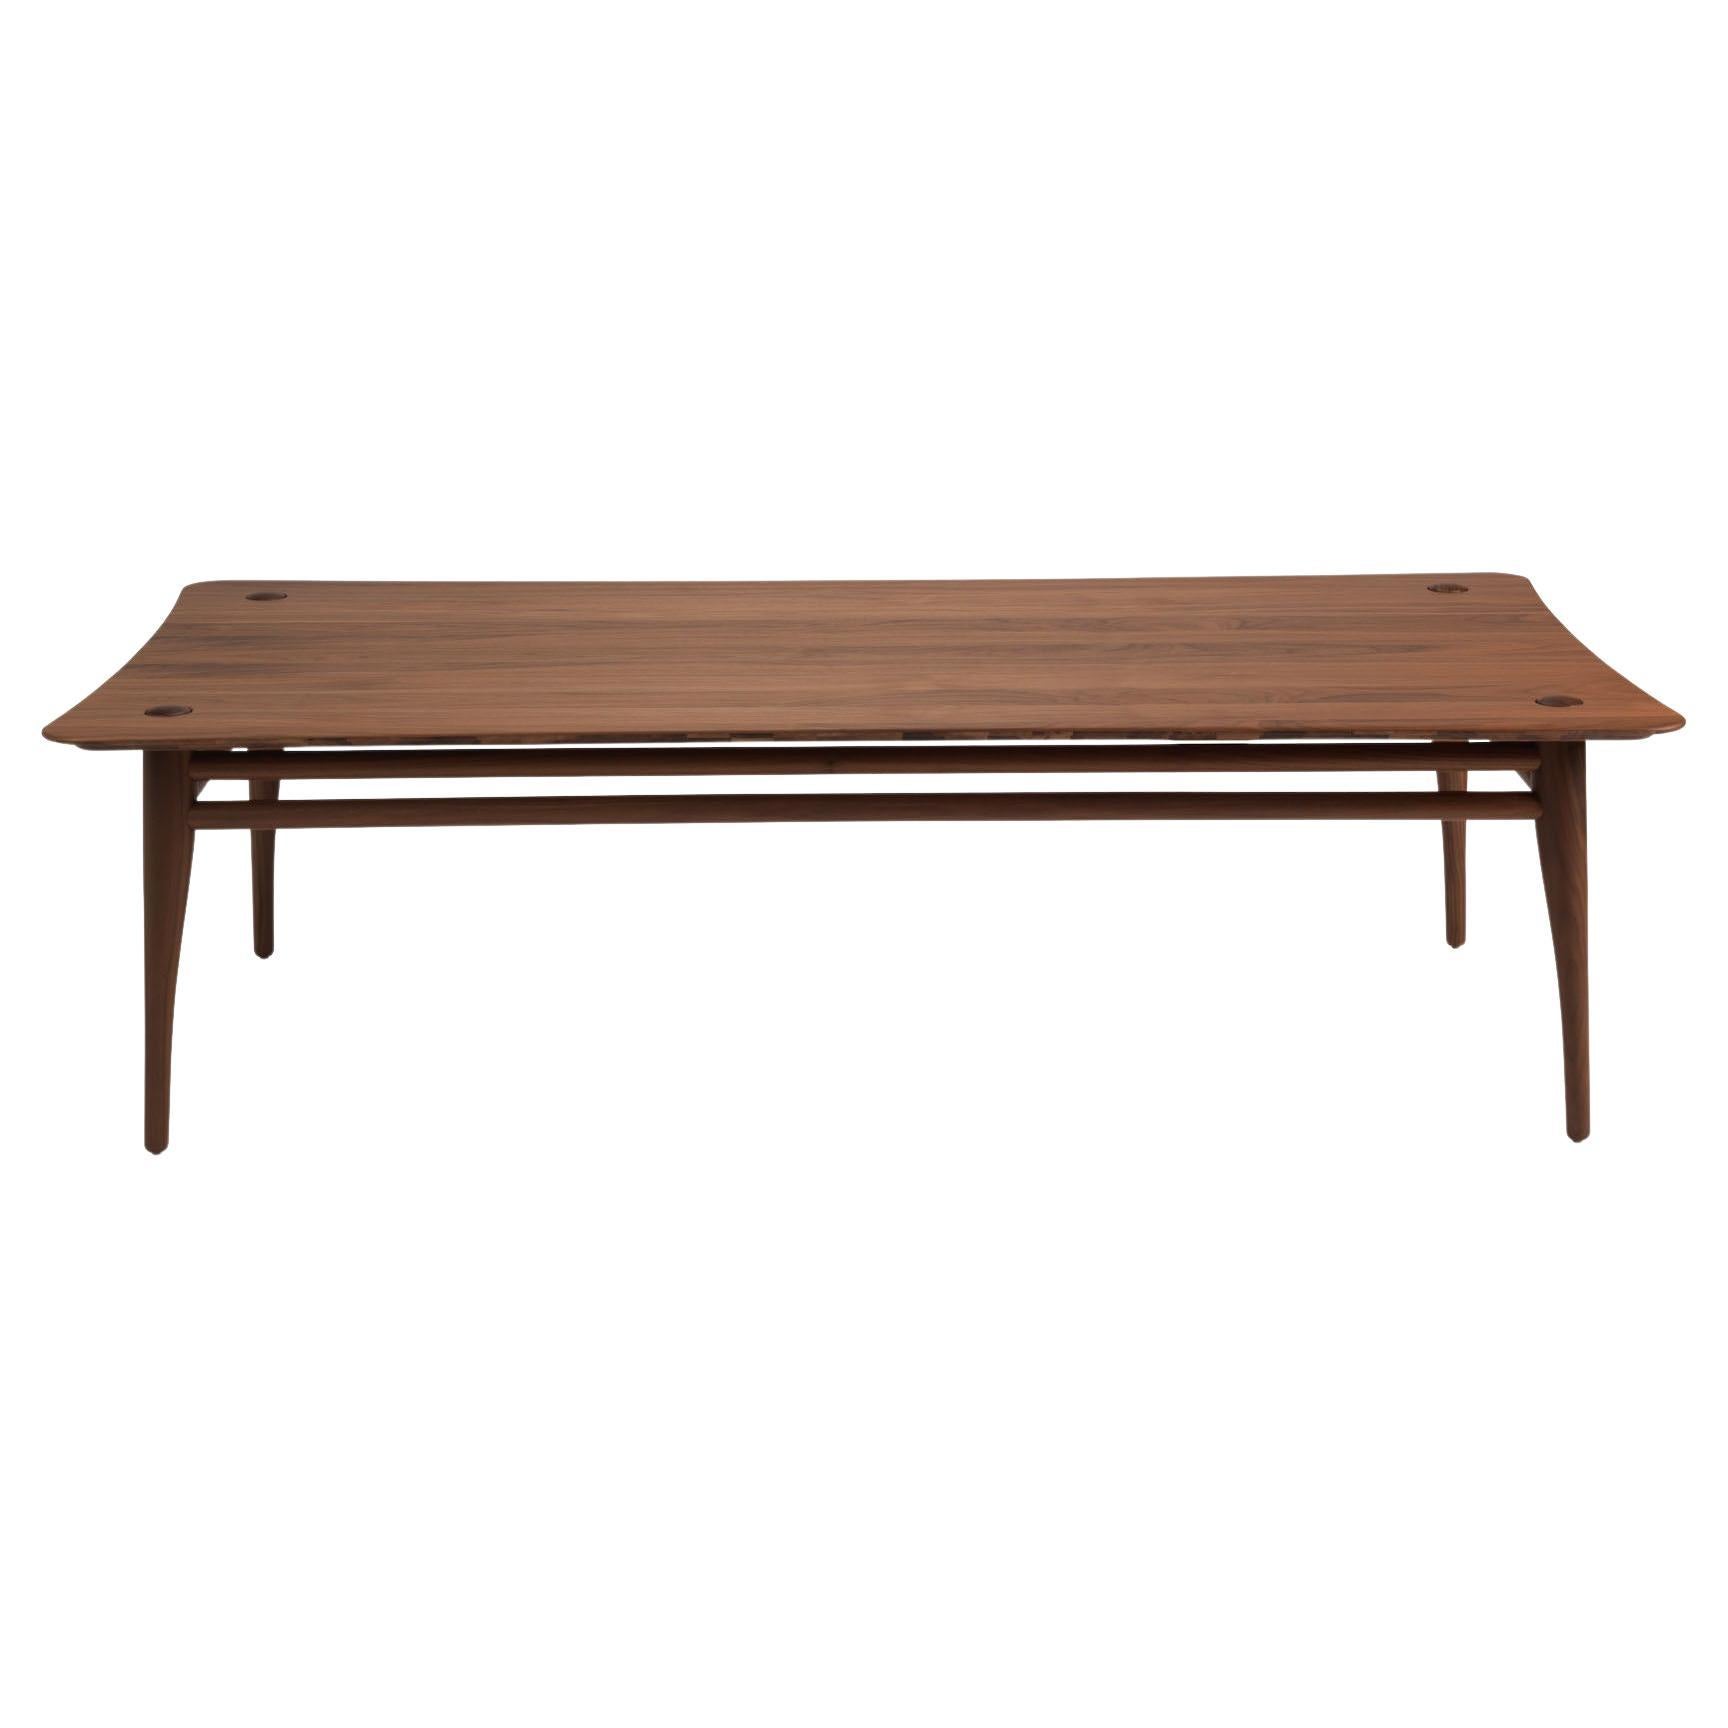 Revised Chilgrove - table basse en noyer massif - rectangle 120x60cm